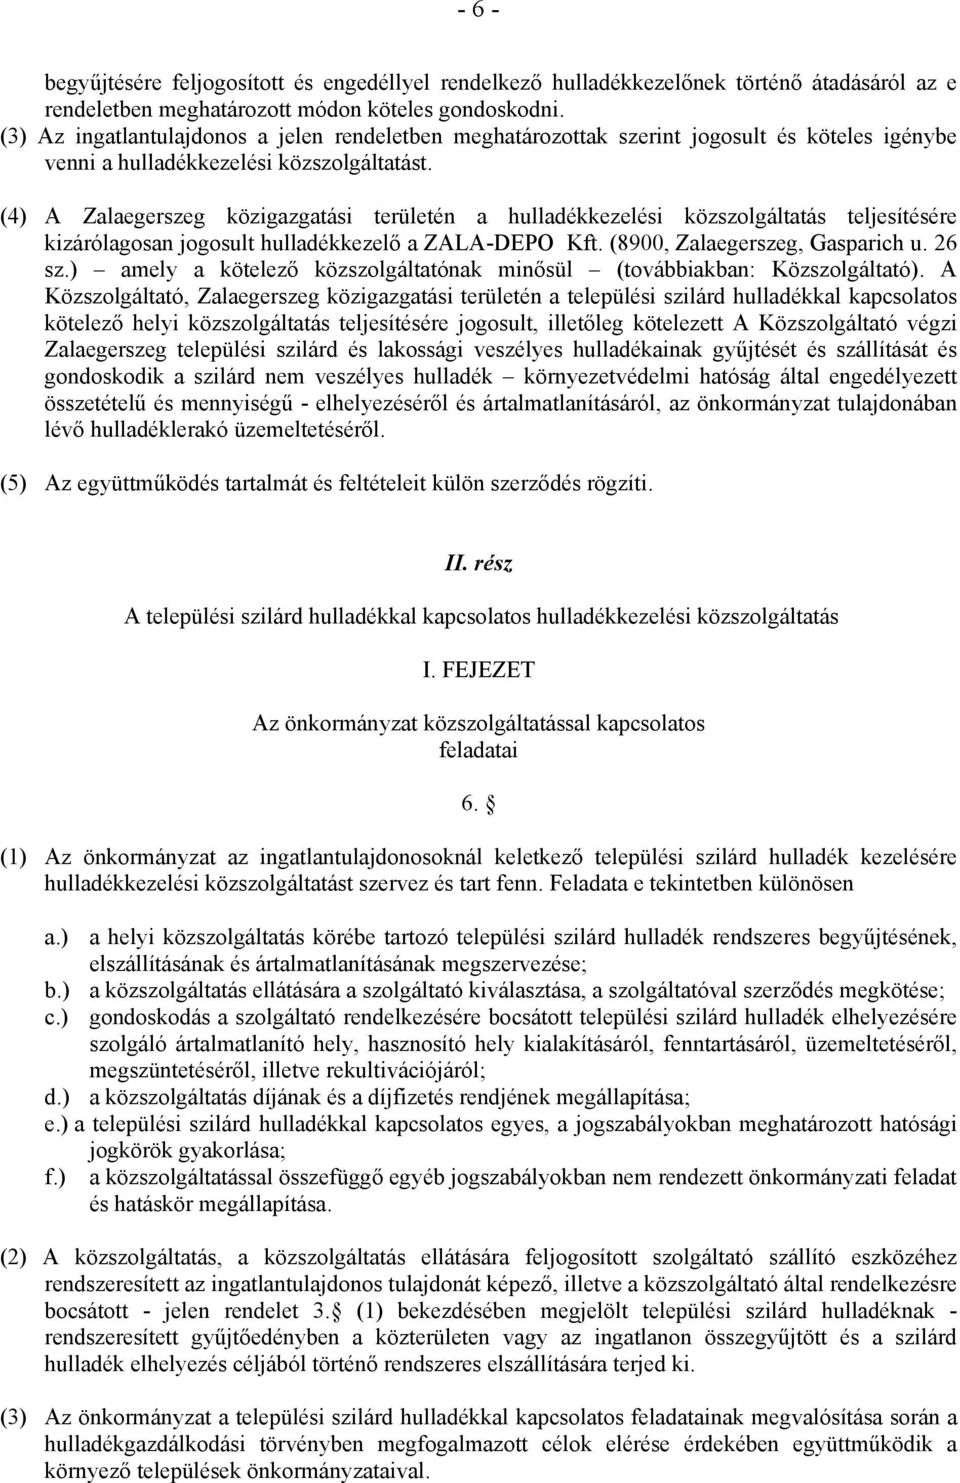 (4) A Zalaegerszeg közigazgatási területén a hulladékkezelési közszolgáltatás teljesítésére kizárólagosan jogosult hulladékkezelő a ZALA-DEPO Kft. (8900, Zalaegerszeg, Gasparich u. 26 sz.